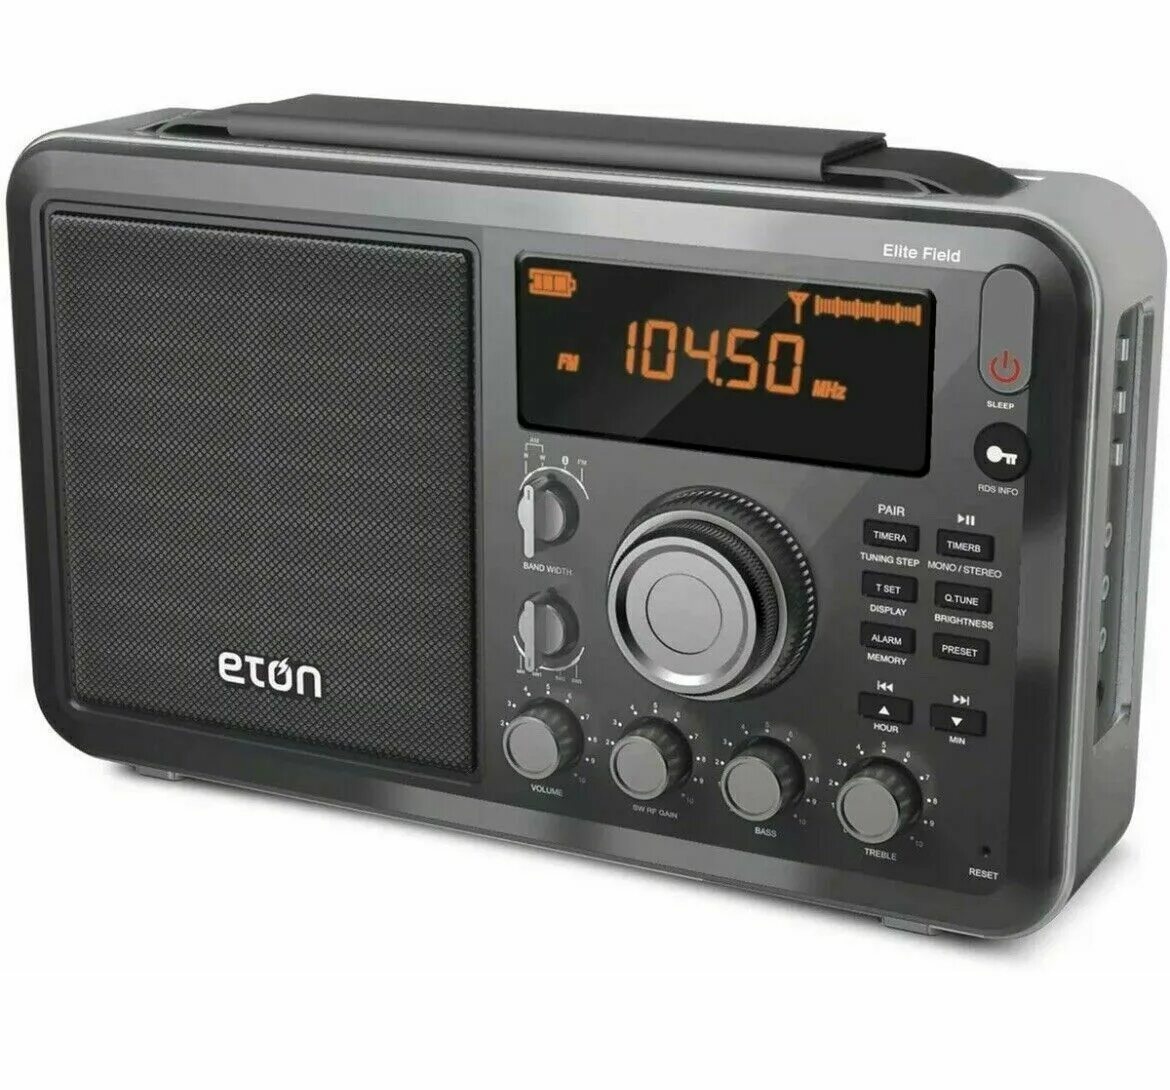 Где купить радио. Радиоприемник Eton field 550 BT. Eton Grundig Edition field 550. Приемник Этон Грюндик. Eton радиоприемники Grundig.